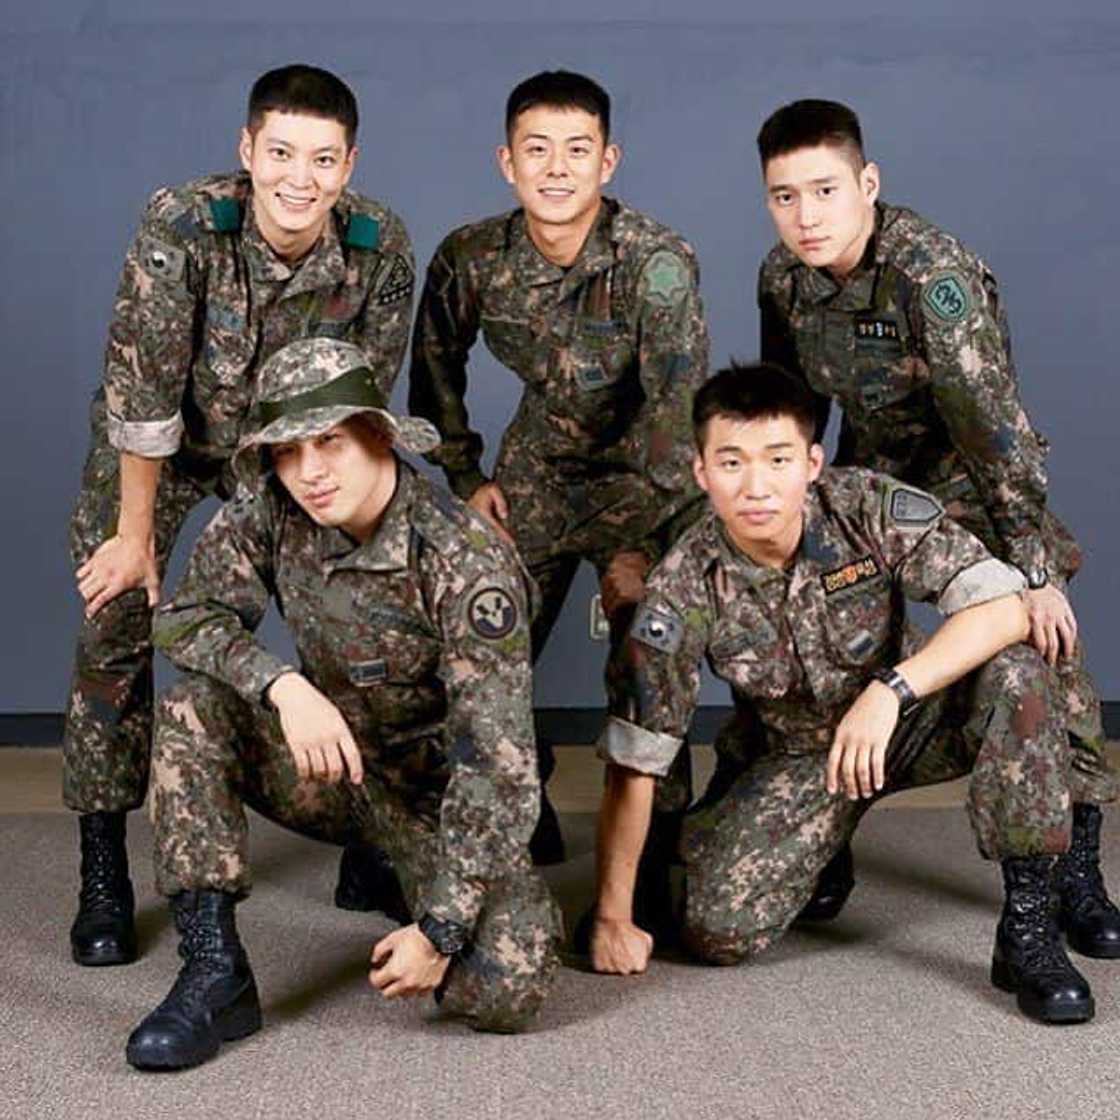 Bigbang members in military